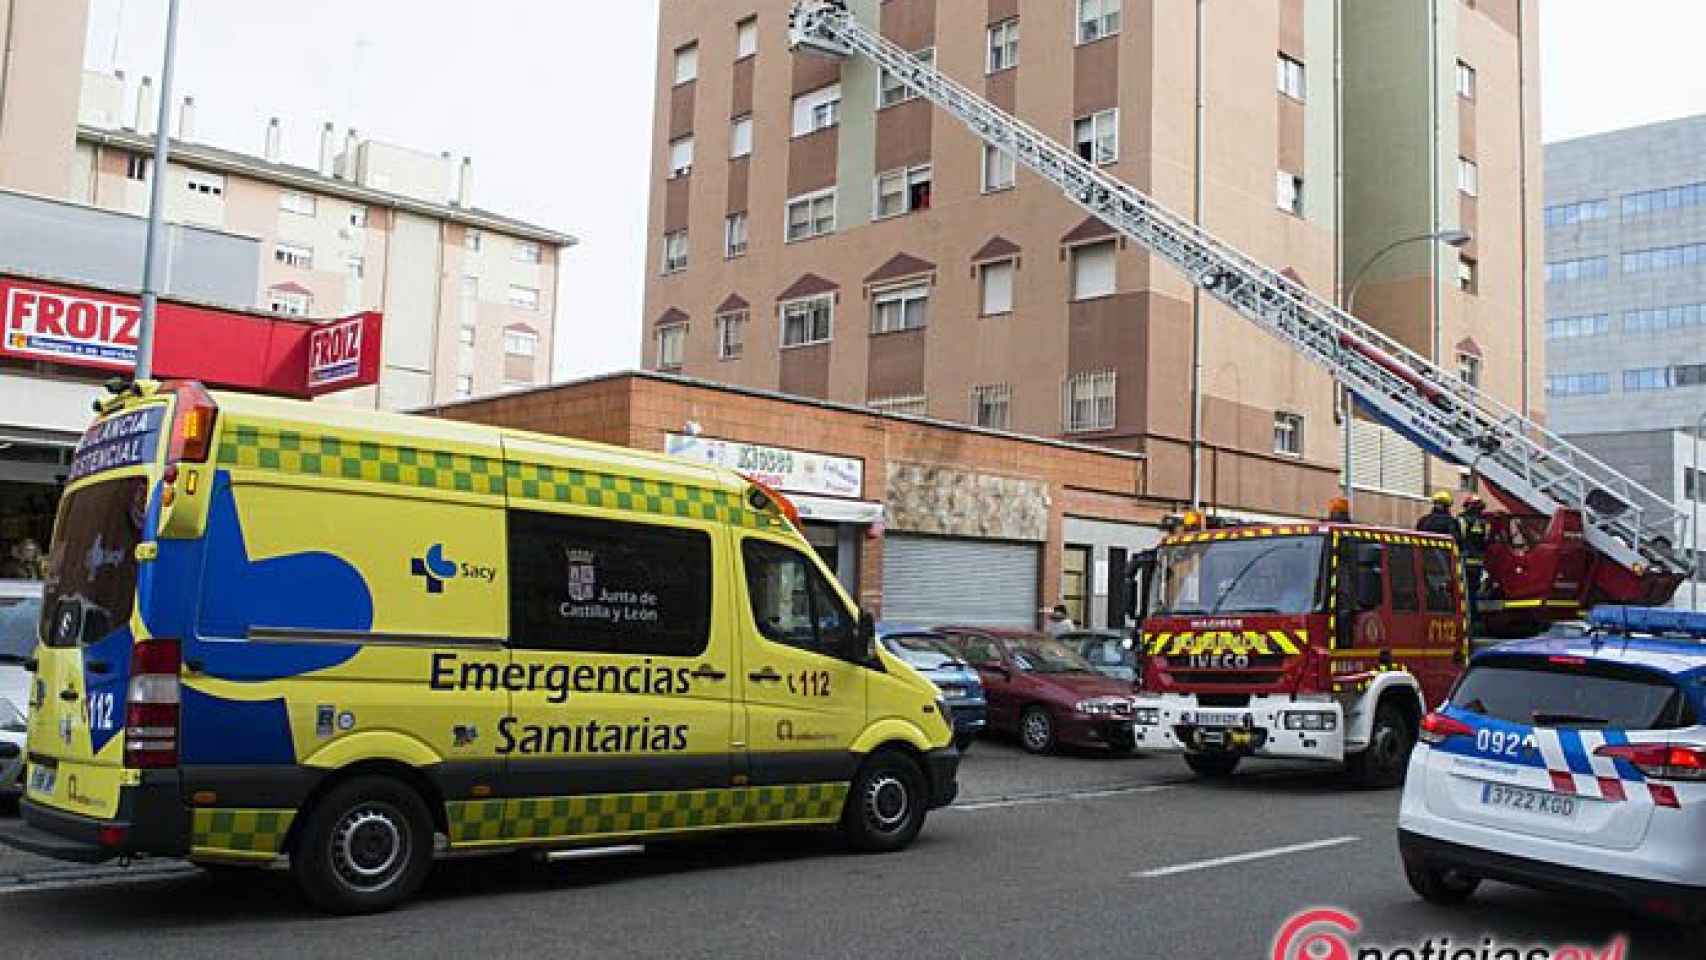 Valladolid-bomberos-rescate-anciana